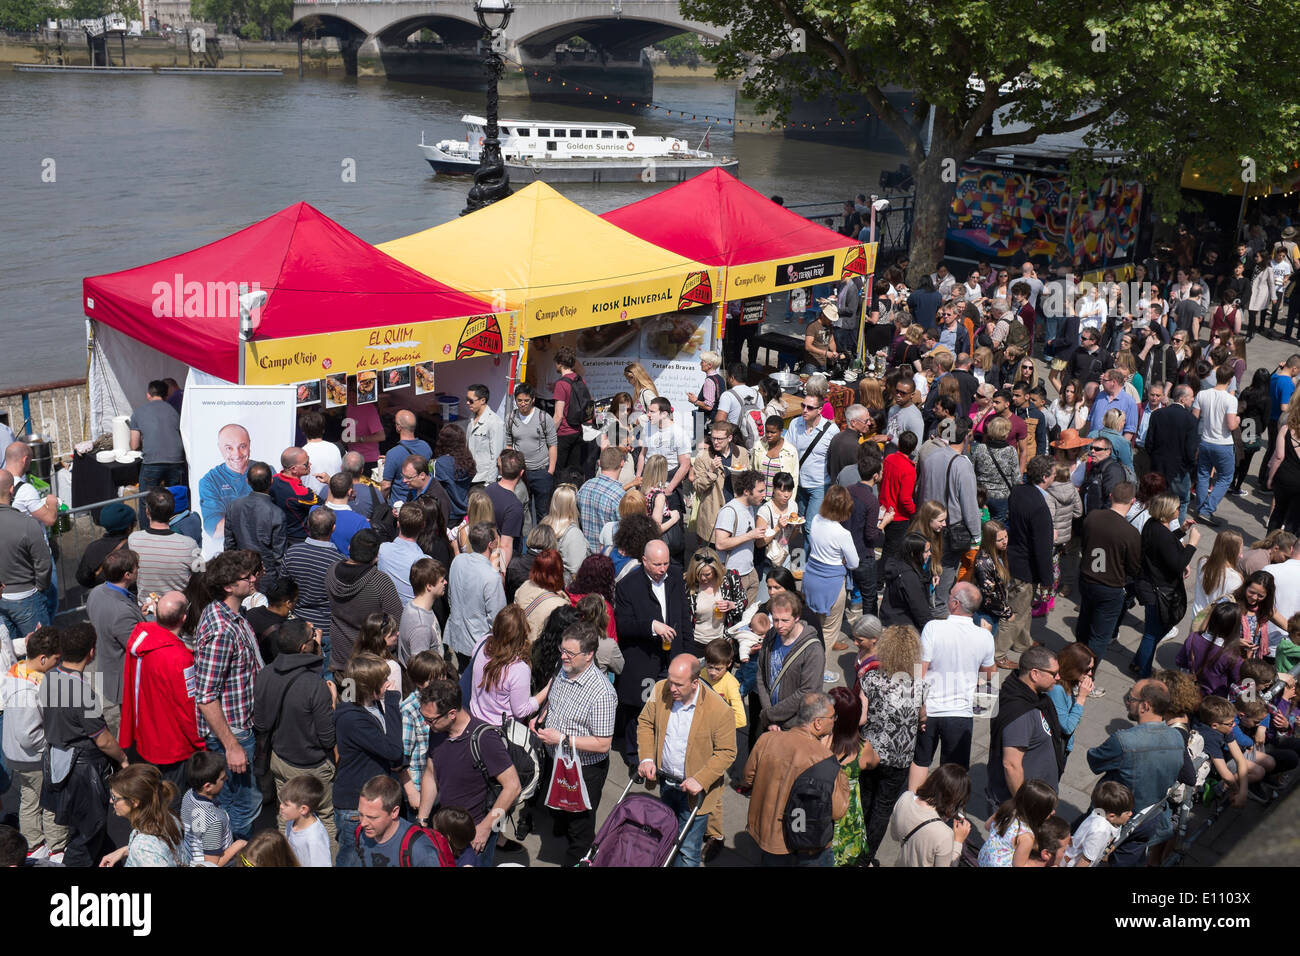 Spanish Food Festival foule sur la rive sud de Londres Angleterre Banque D'Images